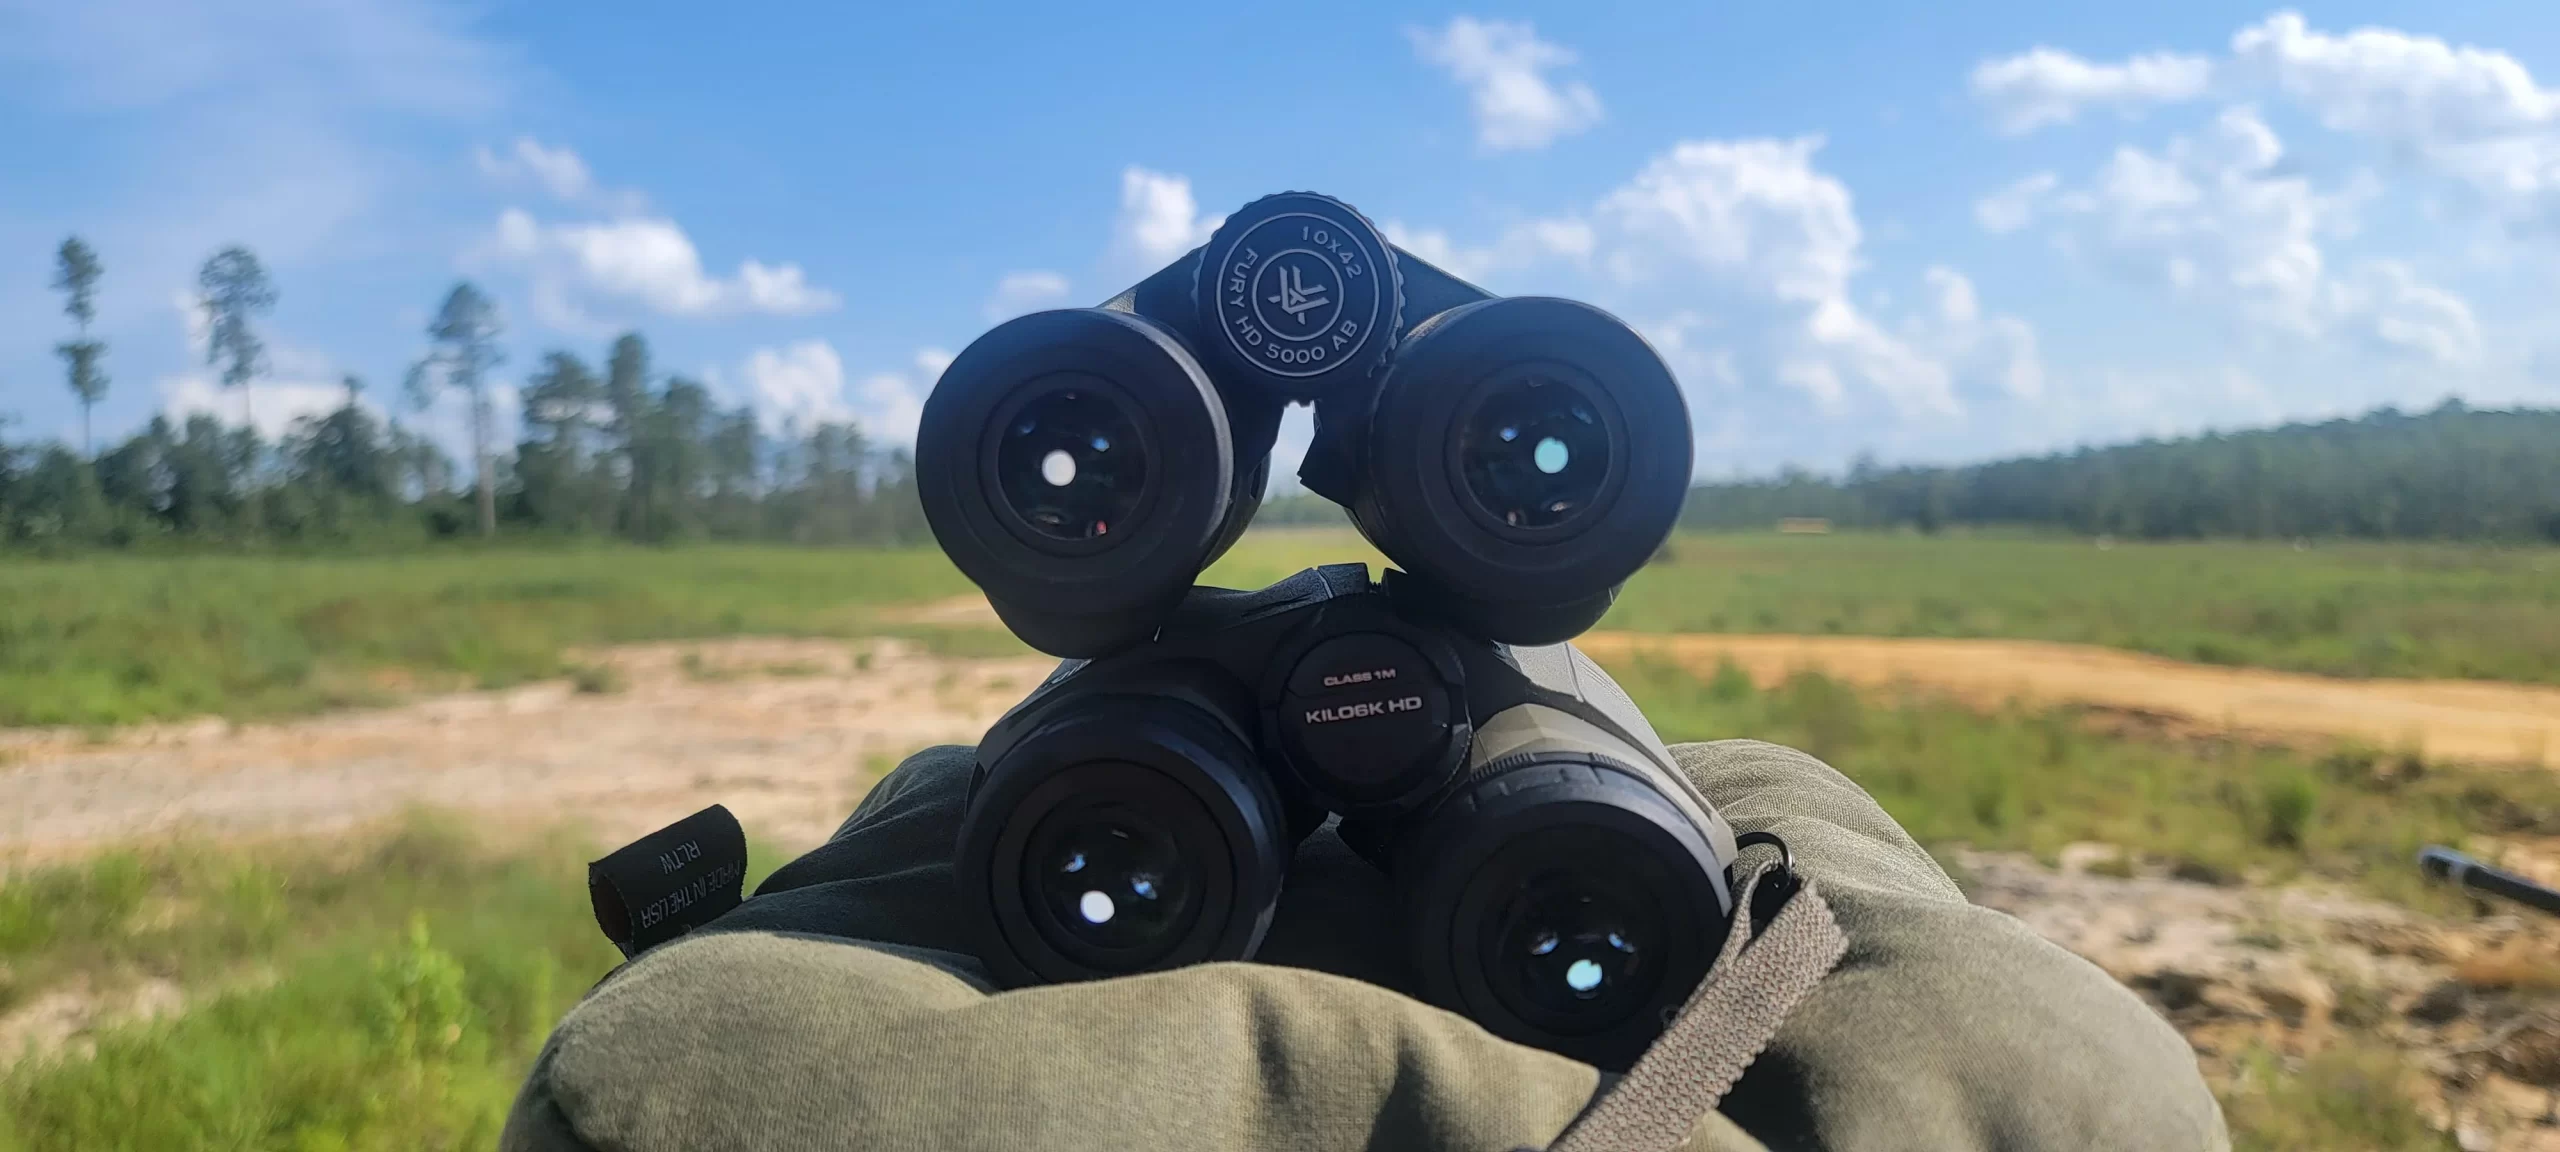 rangefinder binoculars for outdoor adventures